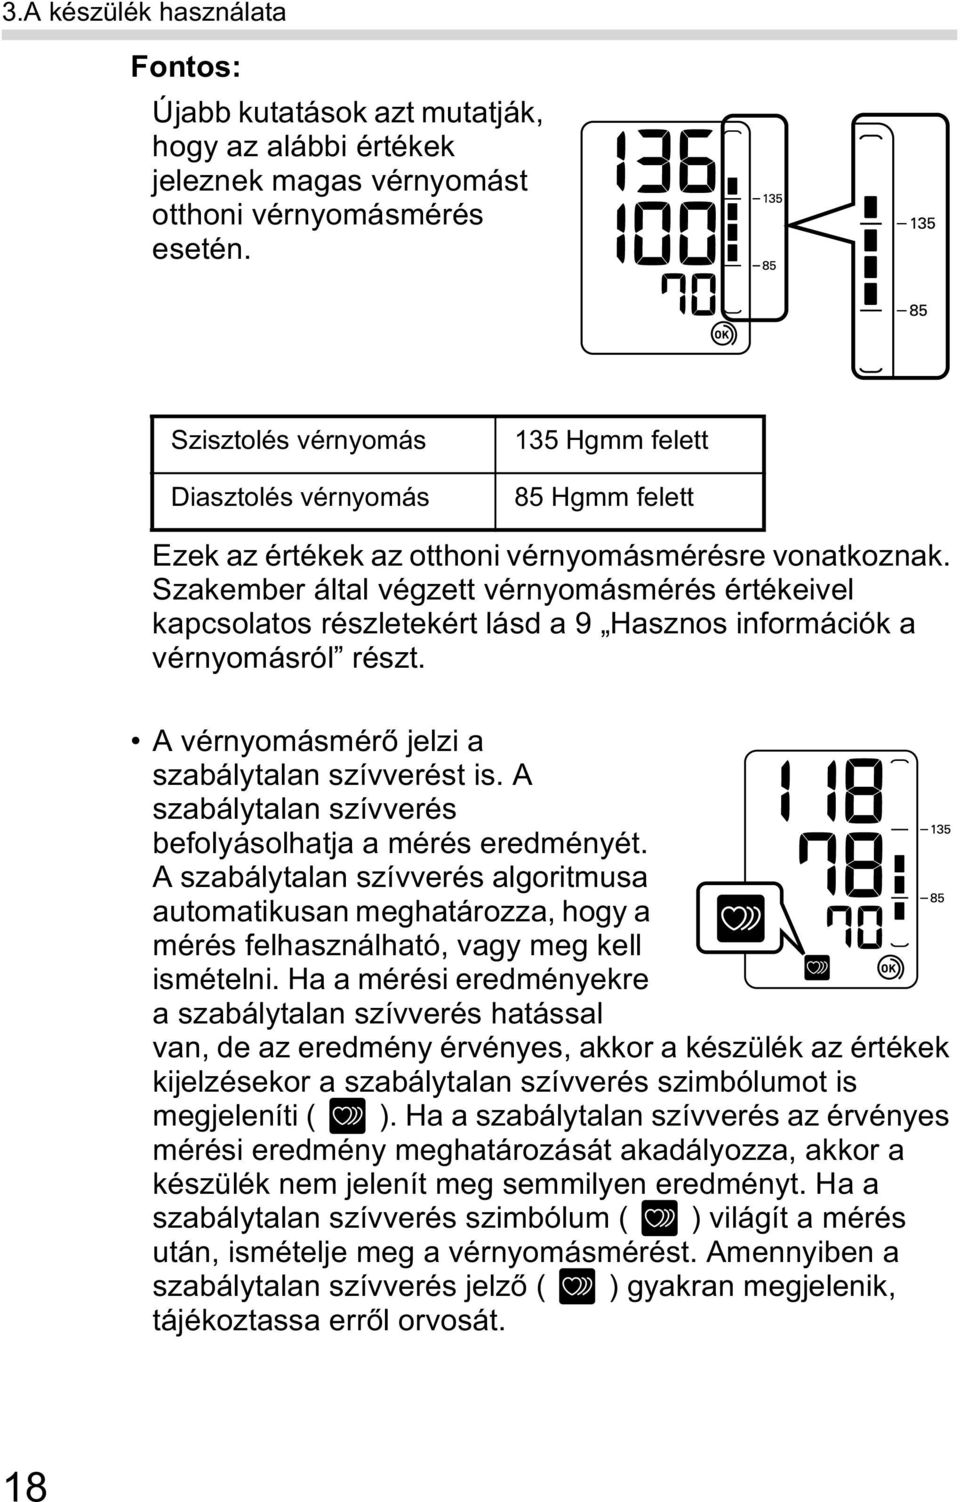 omron vérnyomásmérő használata